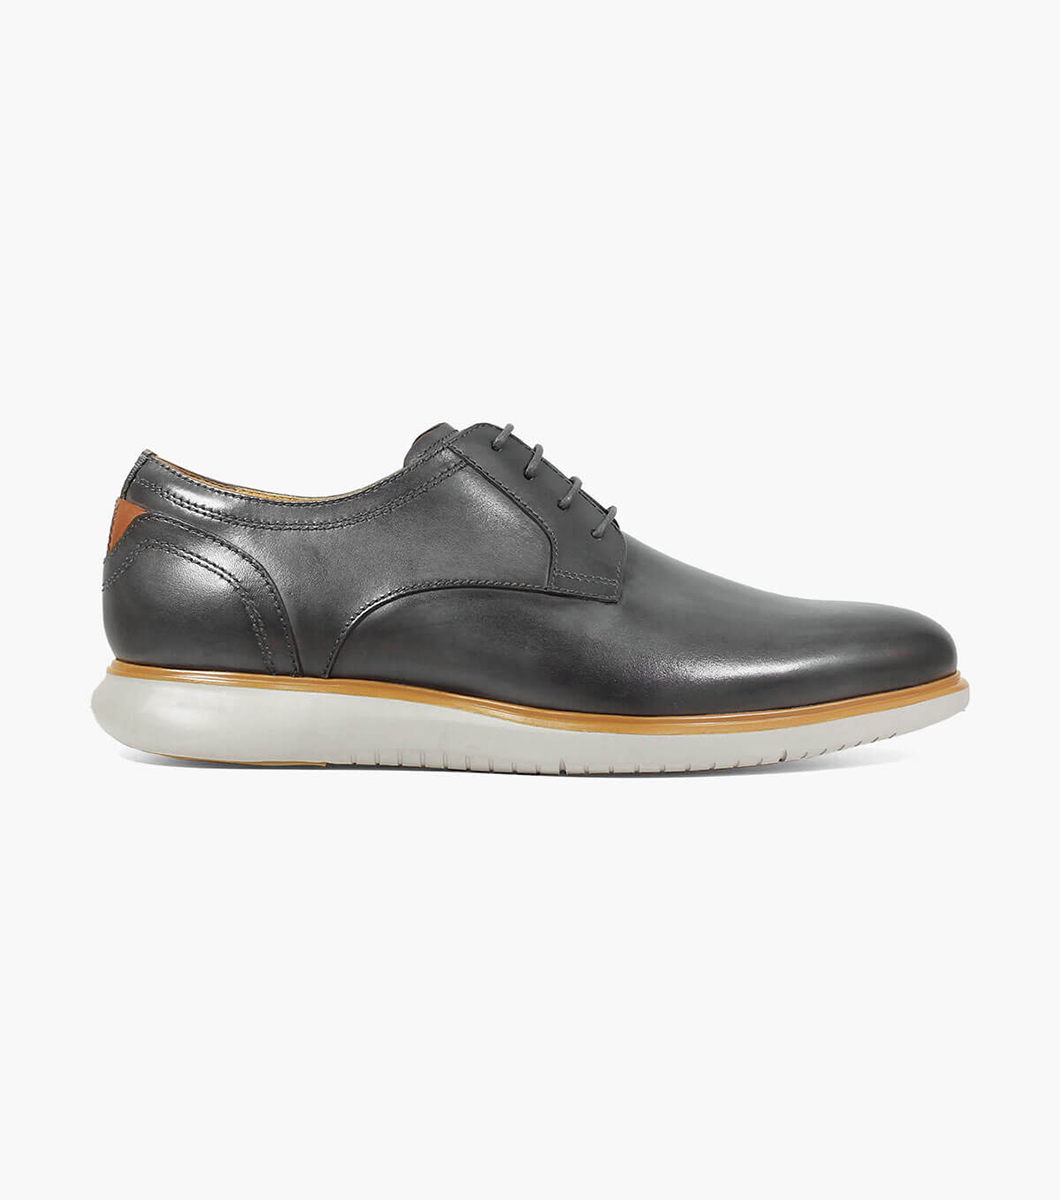 Fuel Plain Toe Oxford Men’s Dress Shoes | Florsheim.com